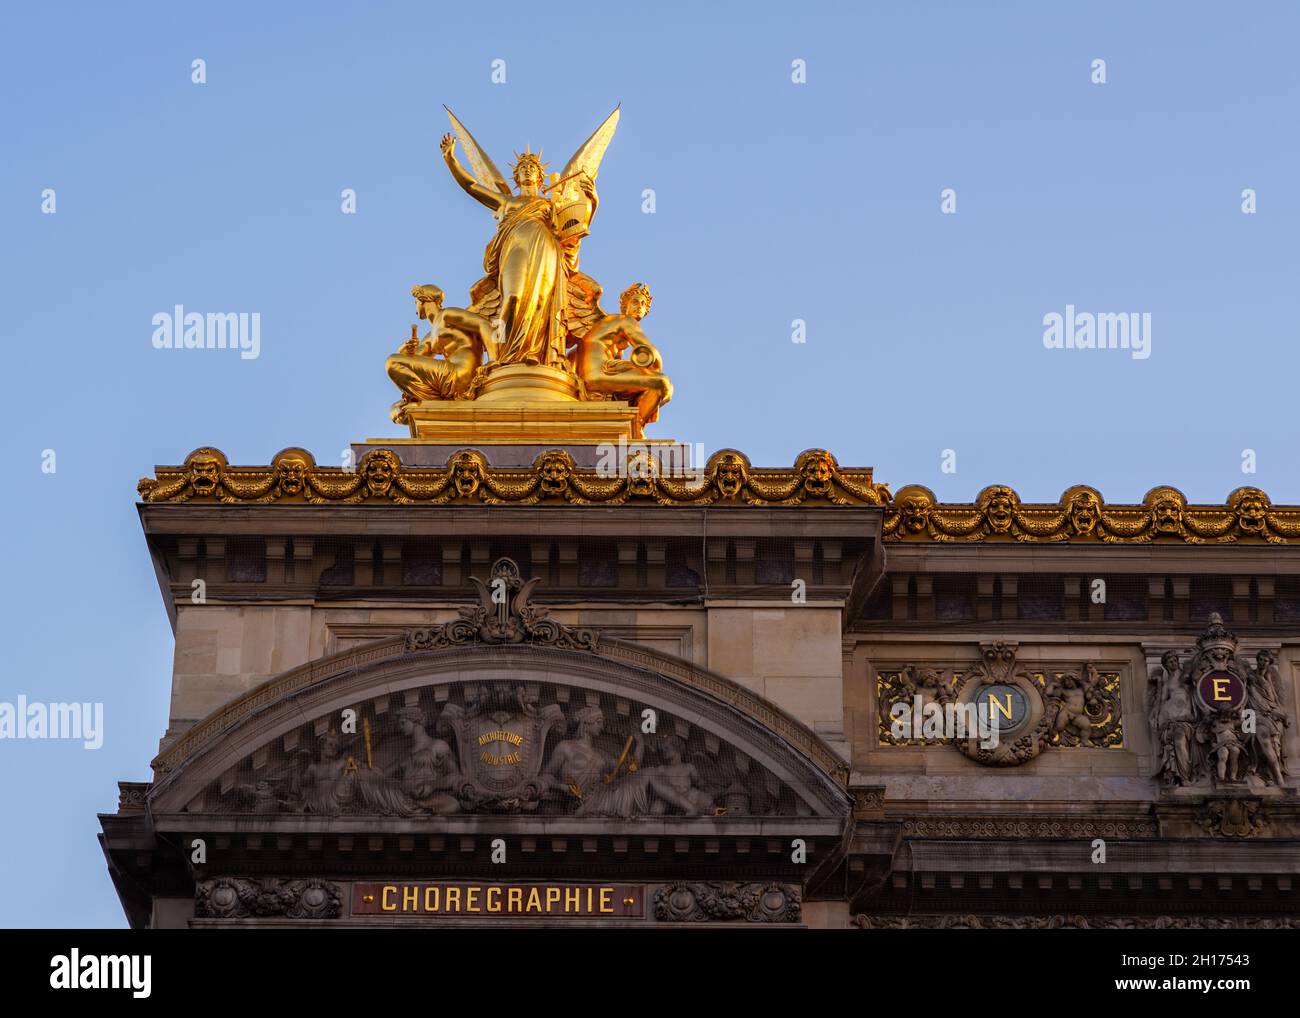 Scultura d'oro in cima all'Opera di Parigi, realizzata in primavera mattina senza gente Foto Stock